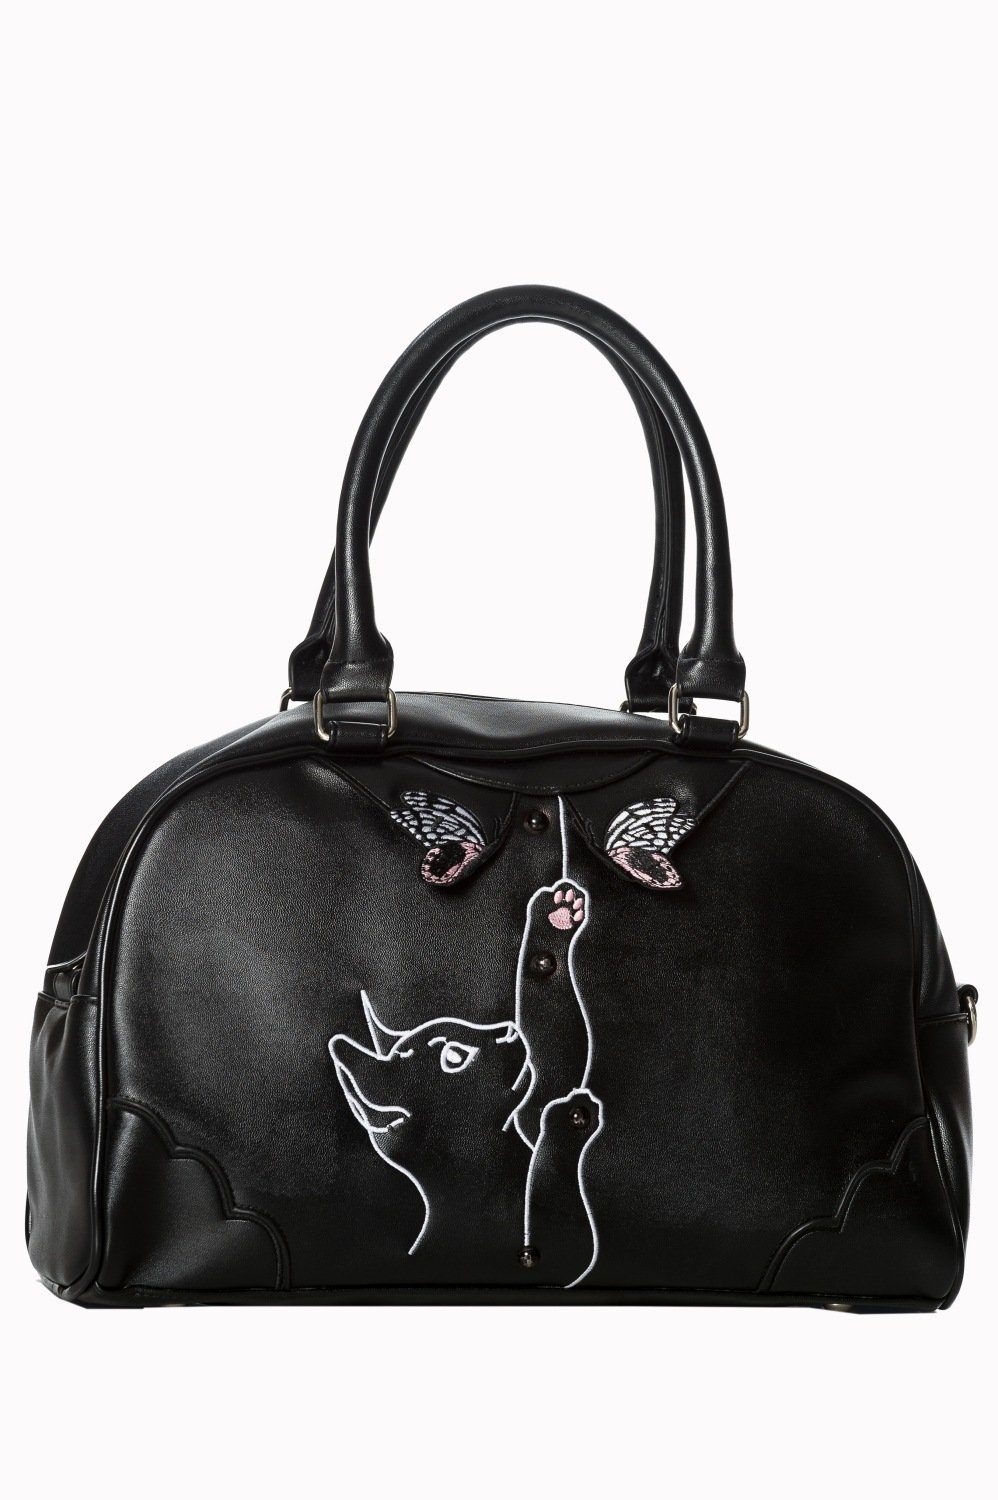 Banned Schultertasche Meow Bag, Katze Stickerei Verstellbarer Schultergurt